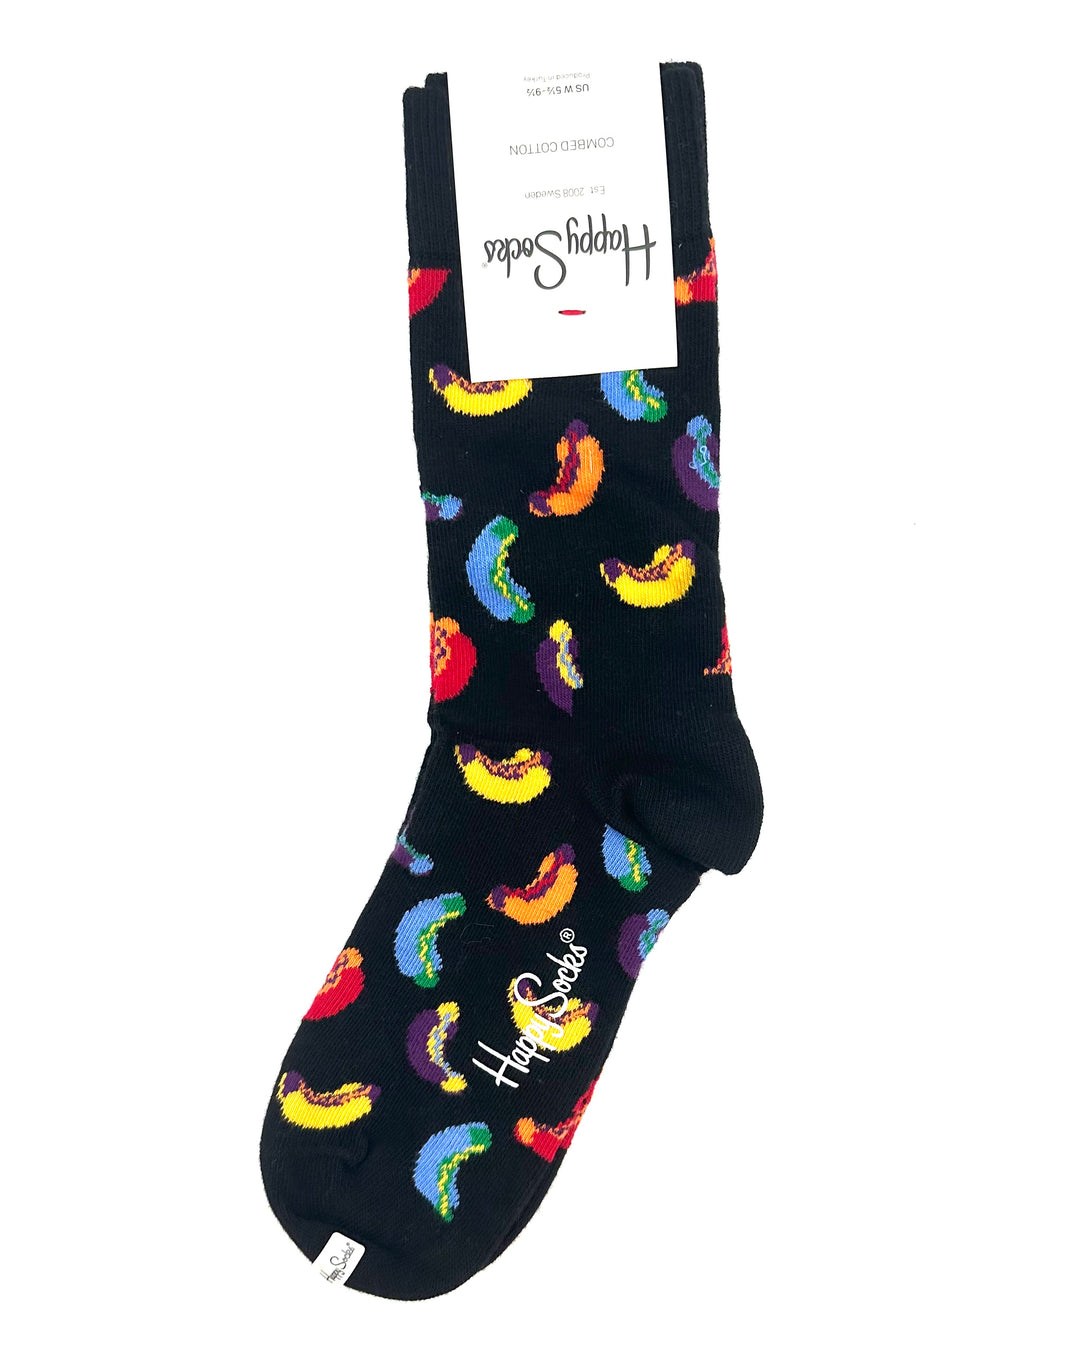 Rainbow Hotdogs Socks - Women's Size 5 1/2 - 9 1/2